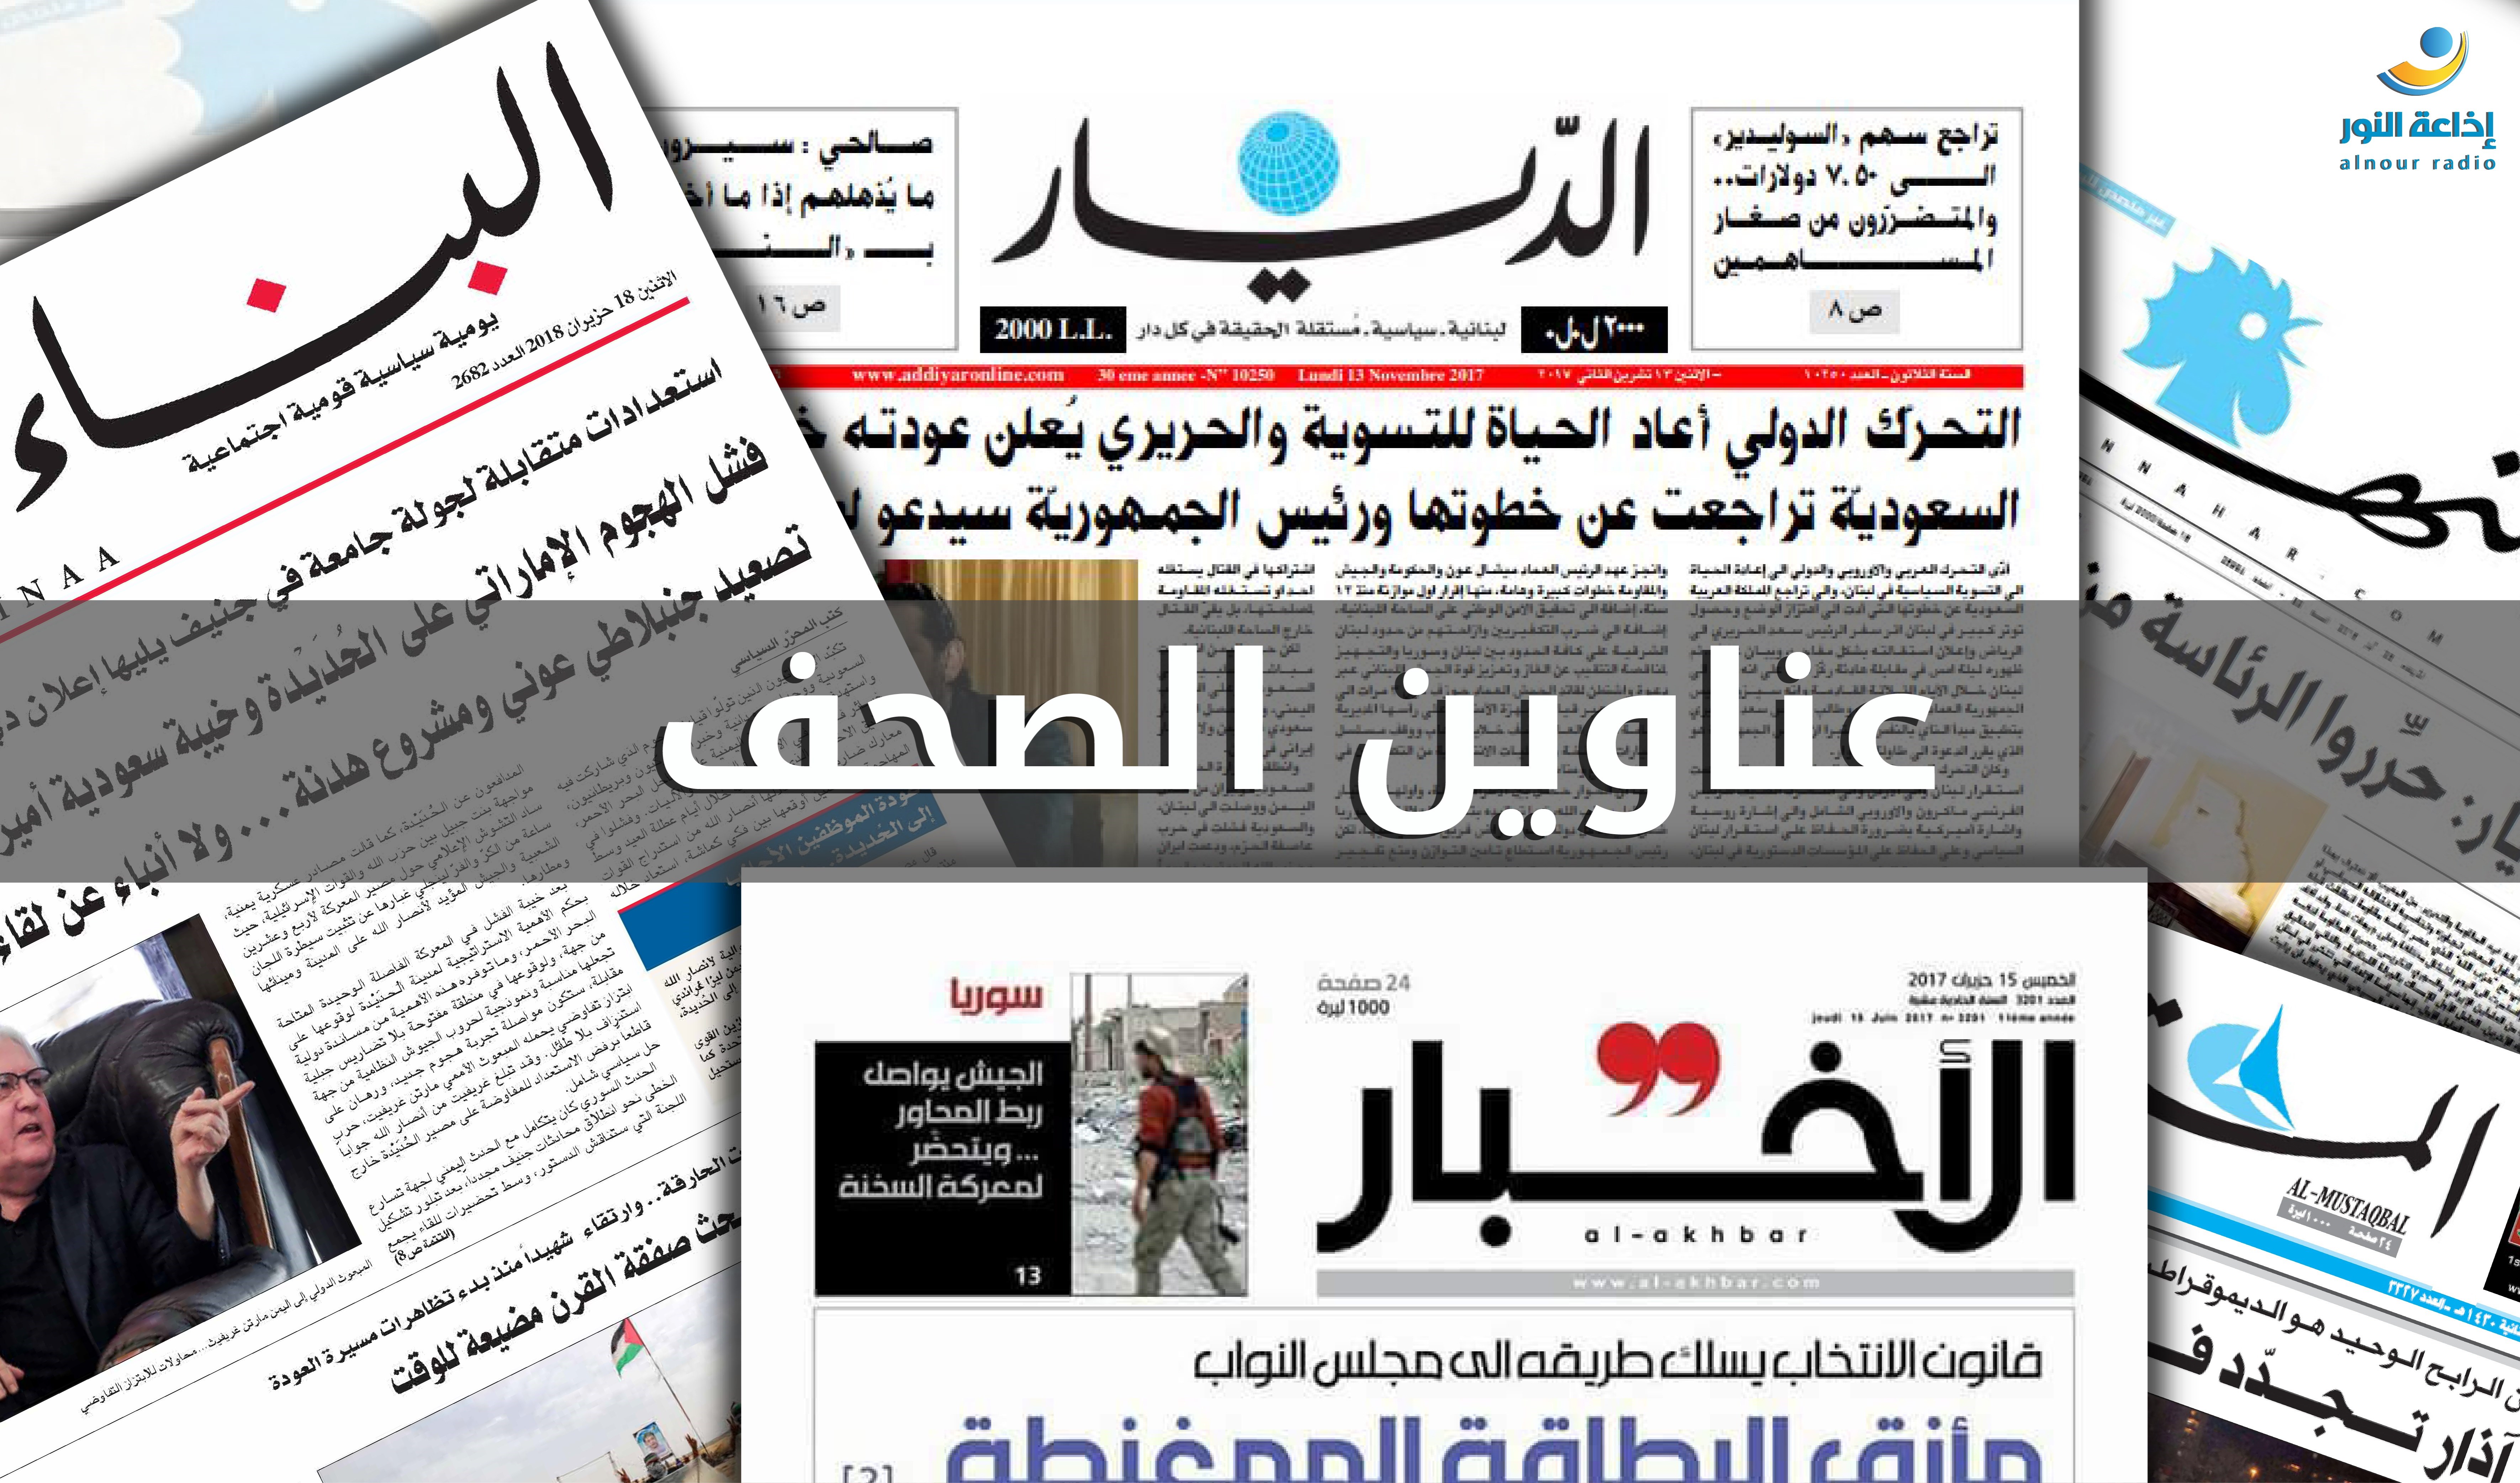 أبرز ما جاء في الصحف اللبنانية اليوم الجمعة؟